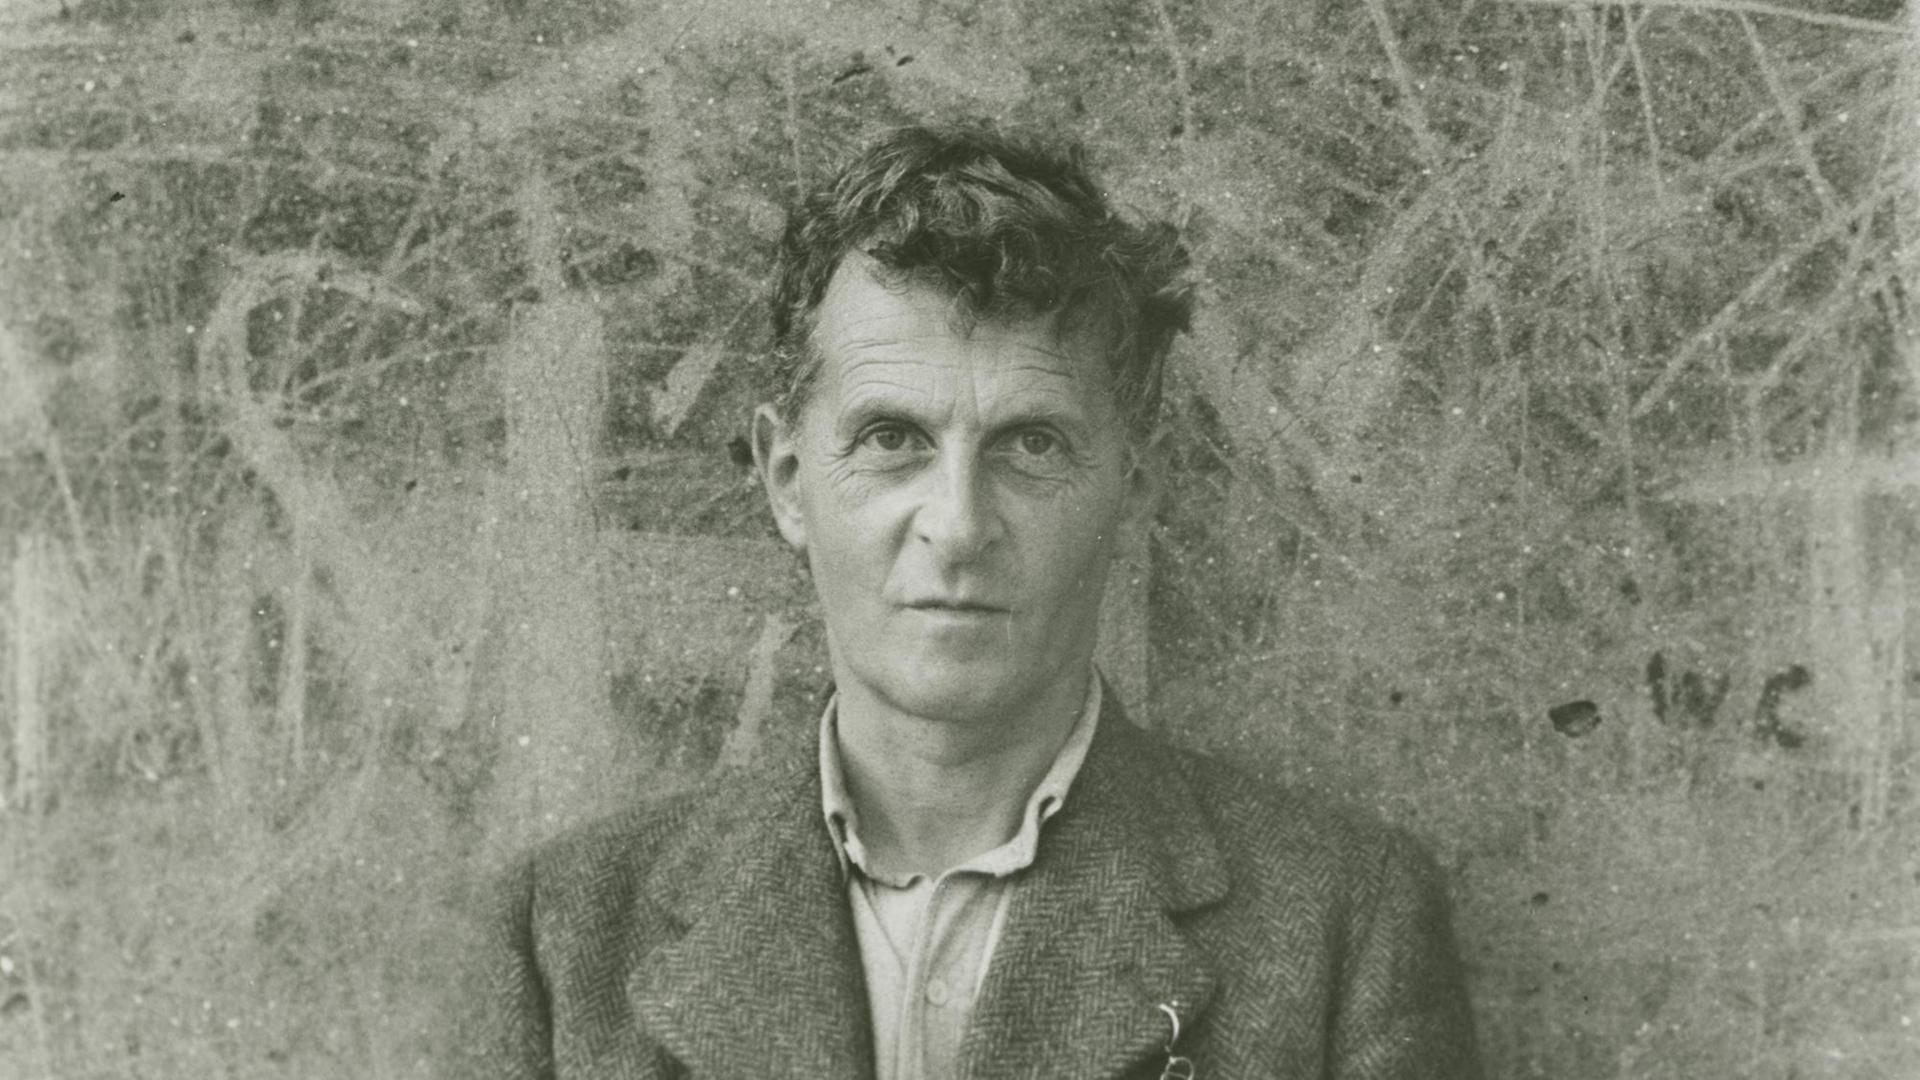 Ludwig Wittgenstein, fotografiert unter seiner eigenen Anleitung vom Freund Ben Richards im September 1947 in Swansea, Südwales (Großbritannien).